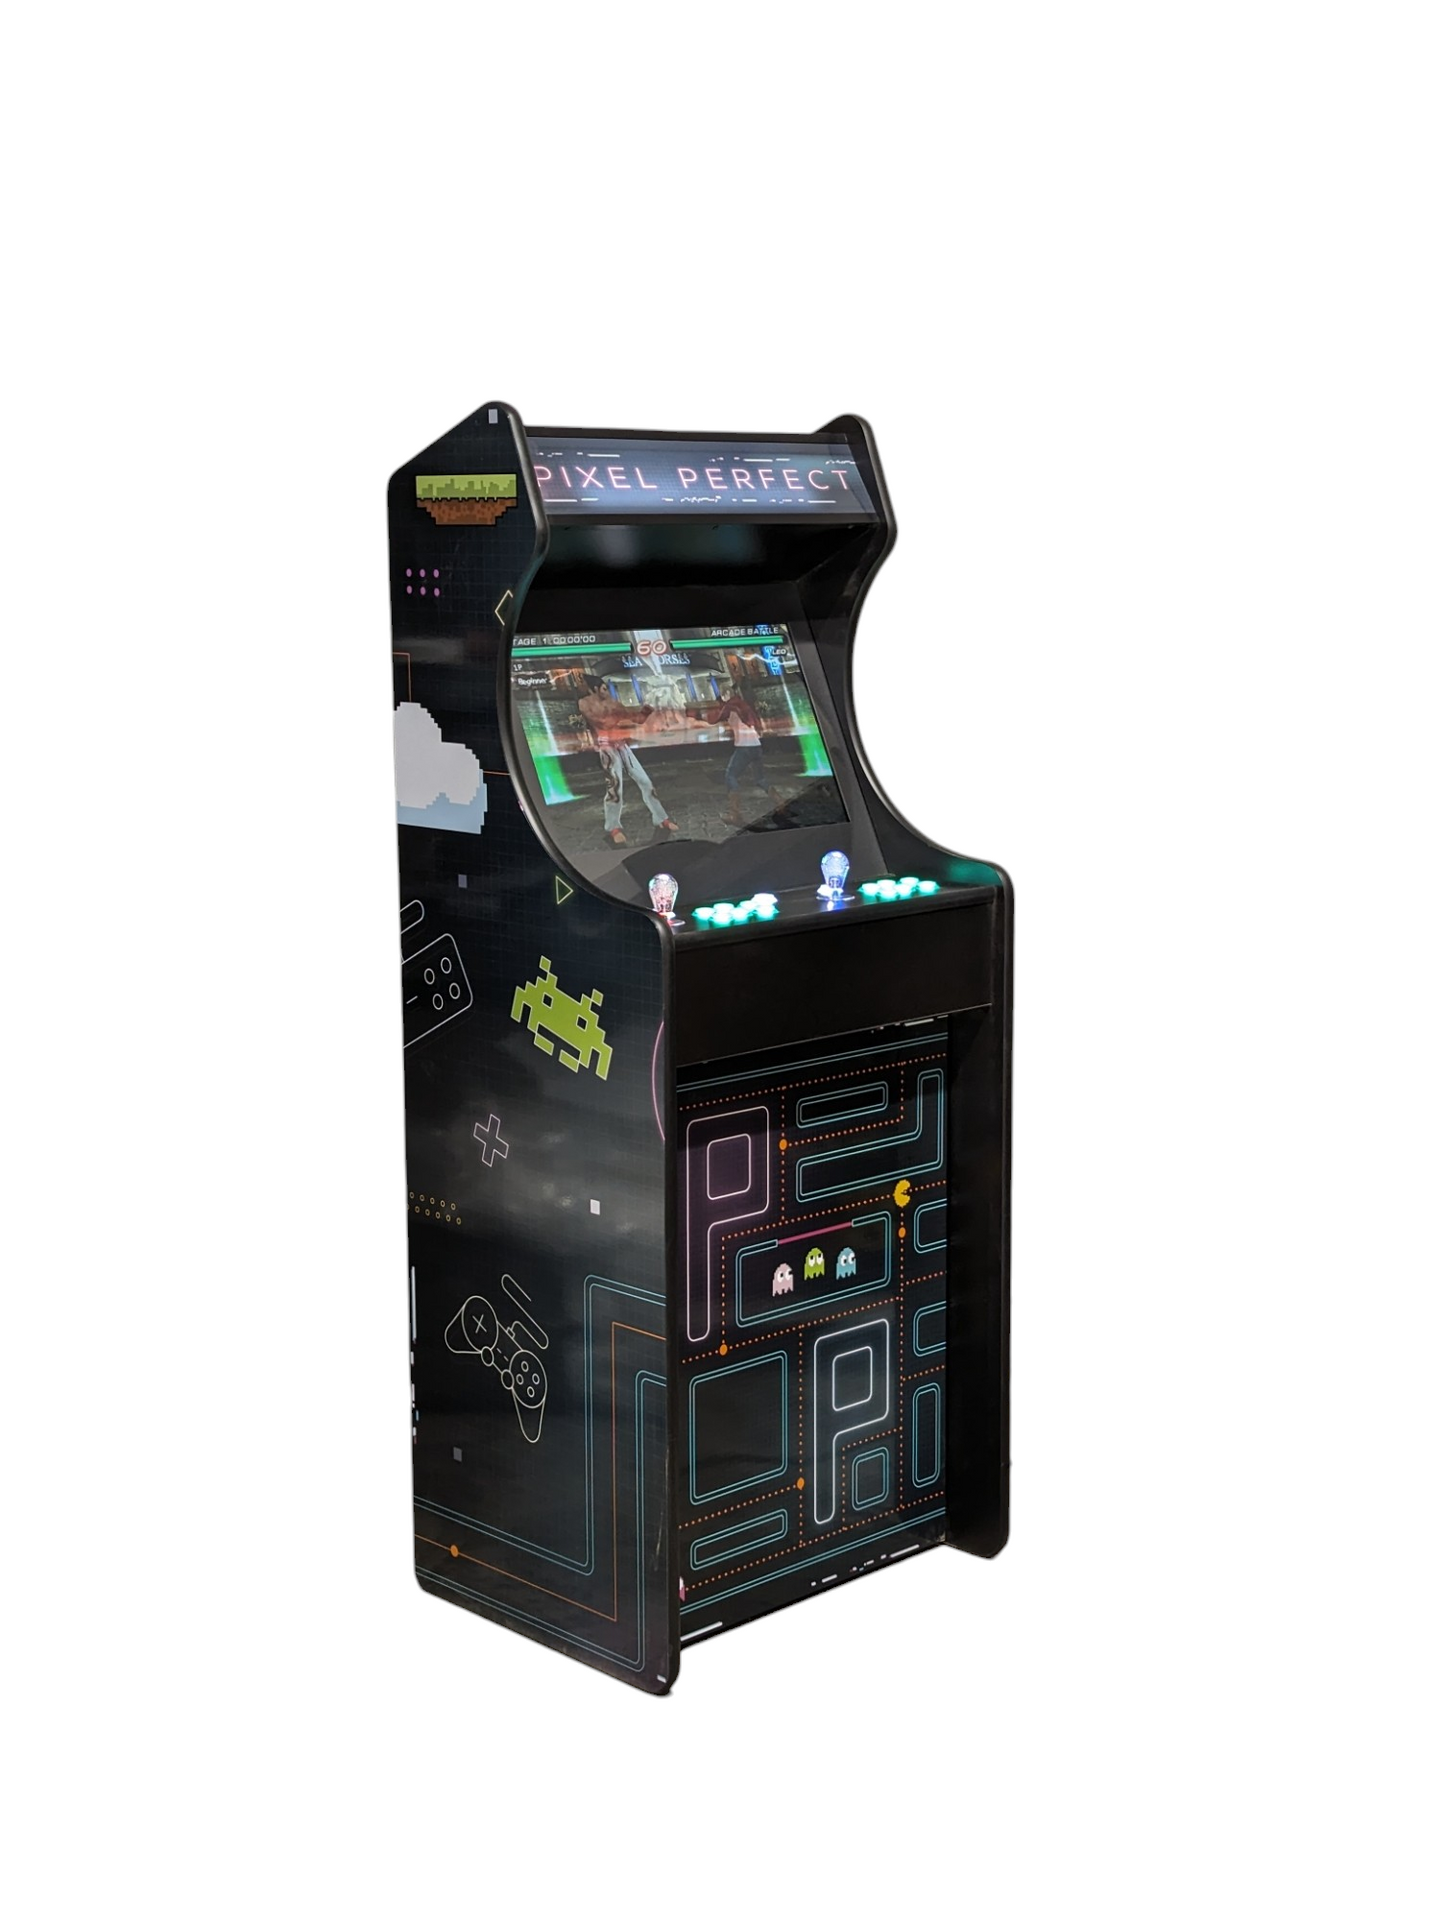 Deluxe 24 Arcade Machine - Pixel Perfect Theme